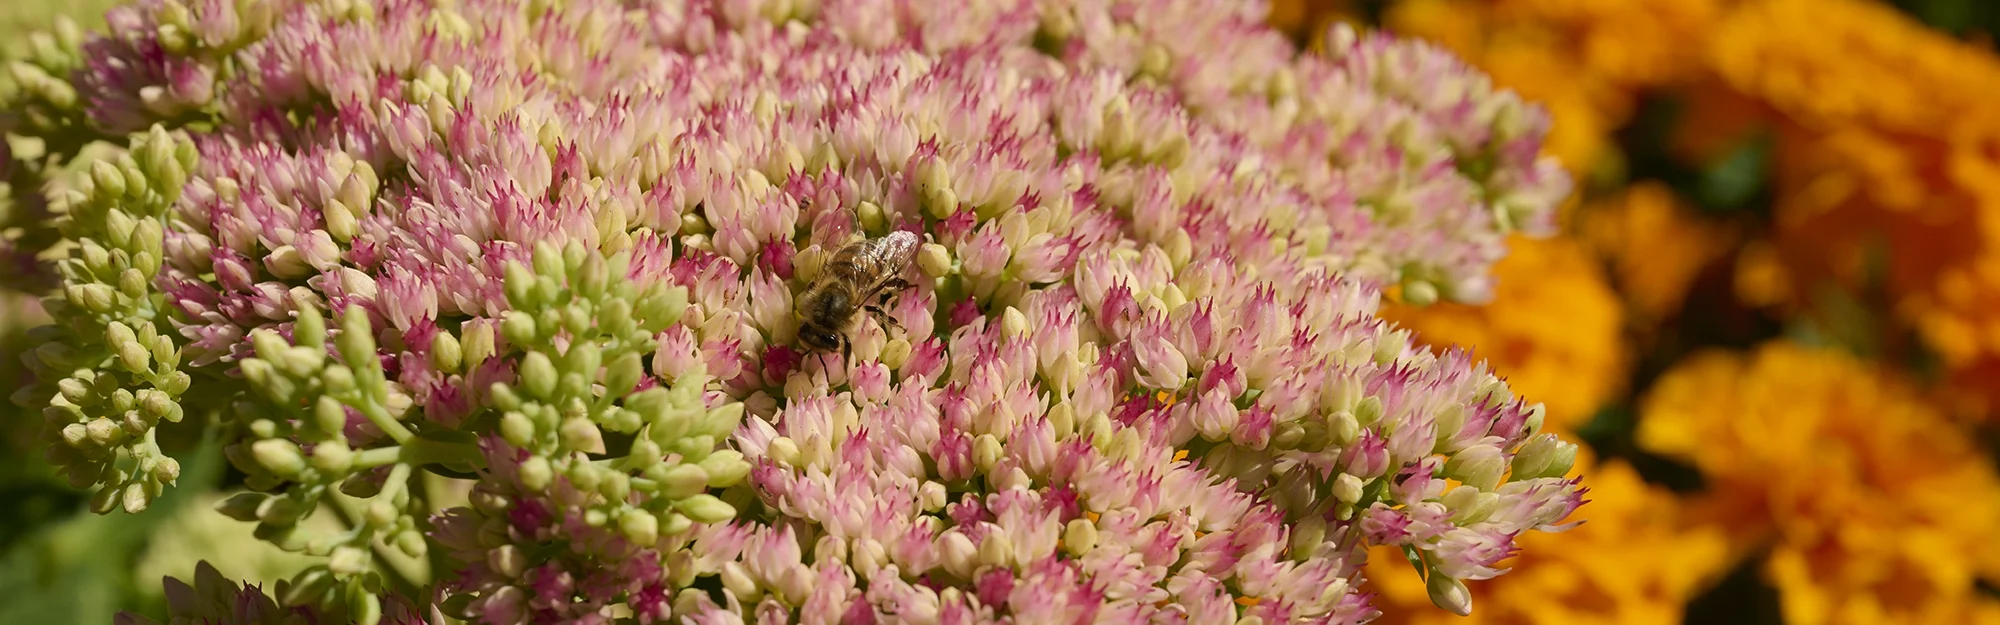 Eine Bien bestäubt eine Pflanze